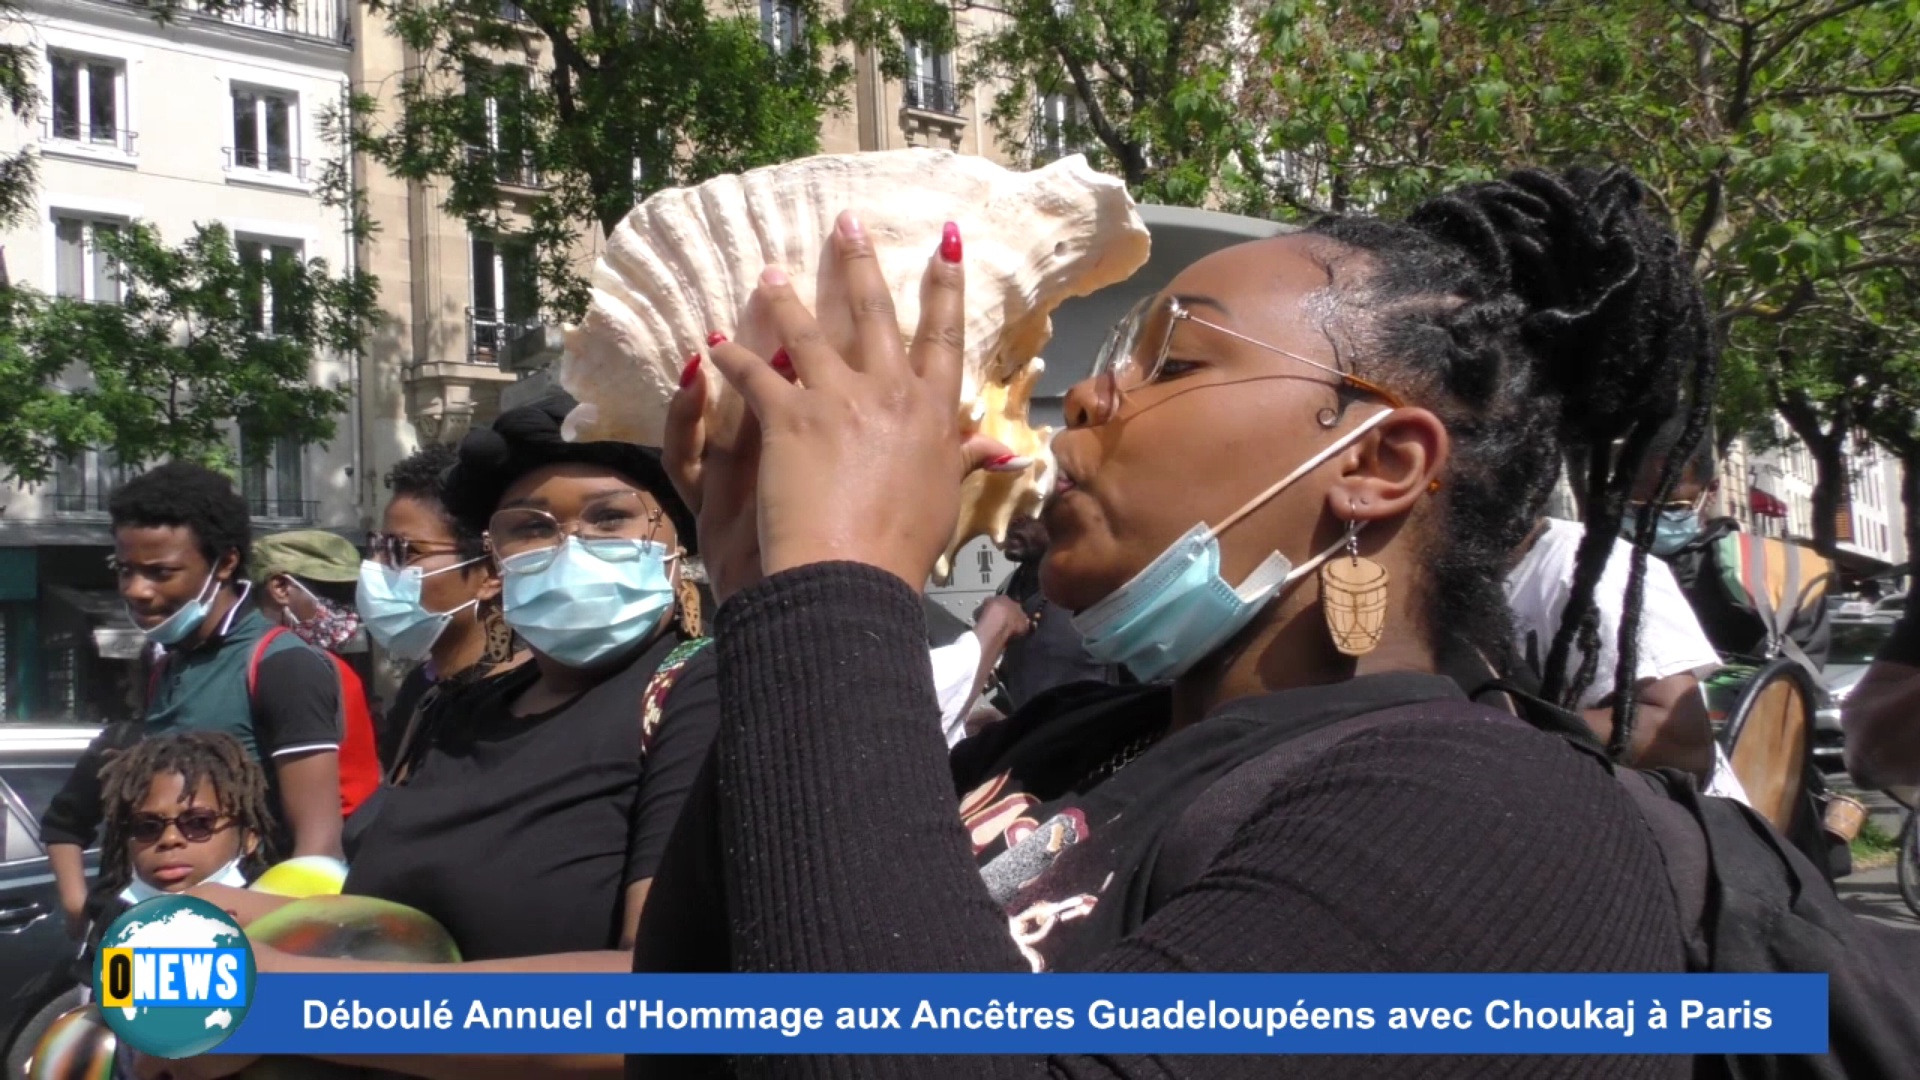 [Vidéo] Onews Hexagone. Déboulé à Paris en Hommage aux Ancêtres victimes de l esclavage avec choukaj